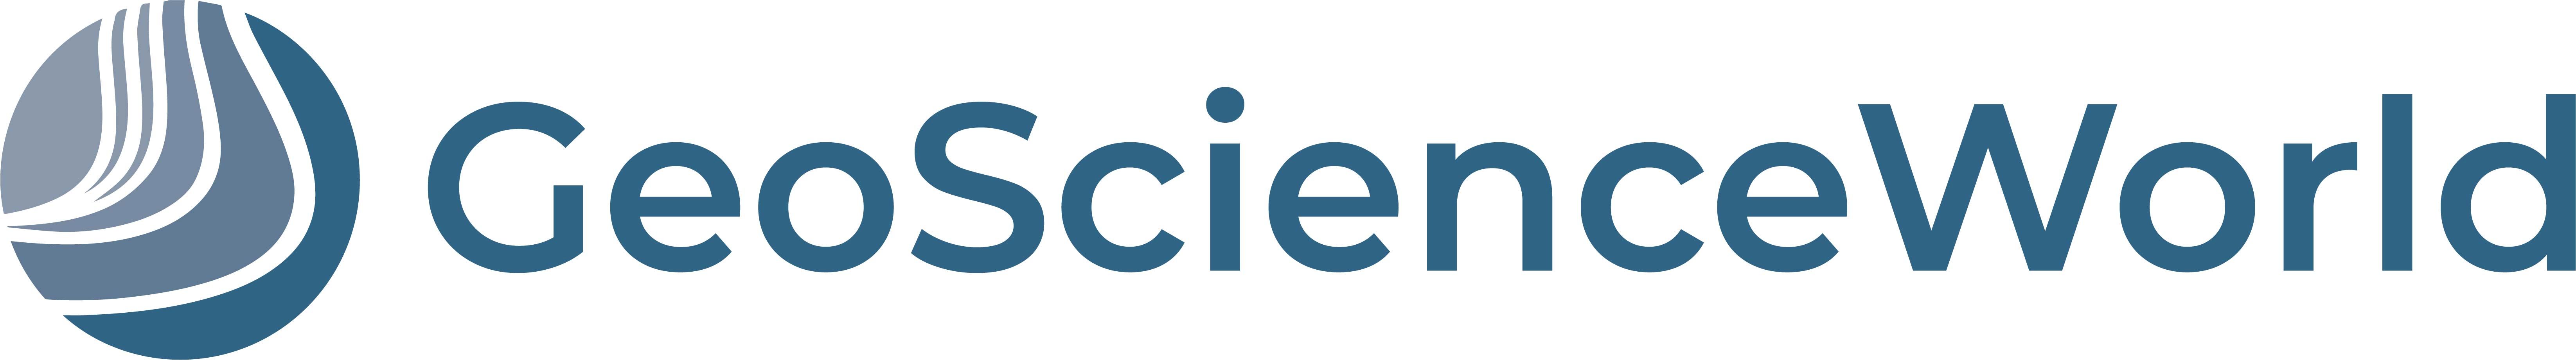 GeoScienceWorld Publishing Logo